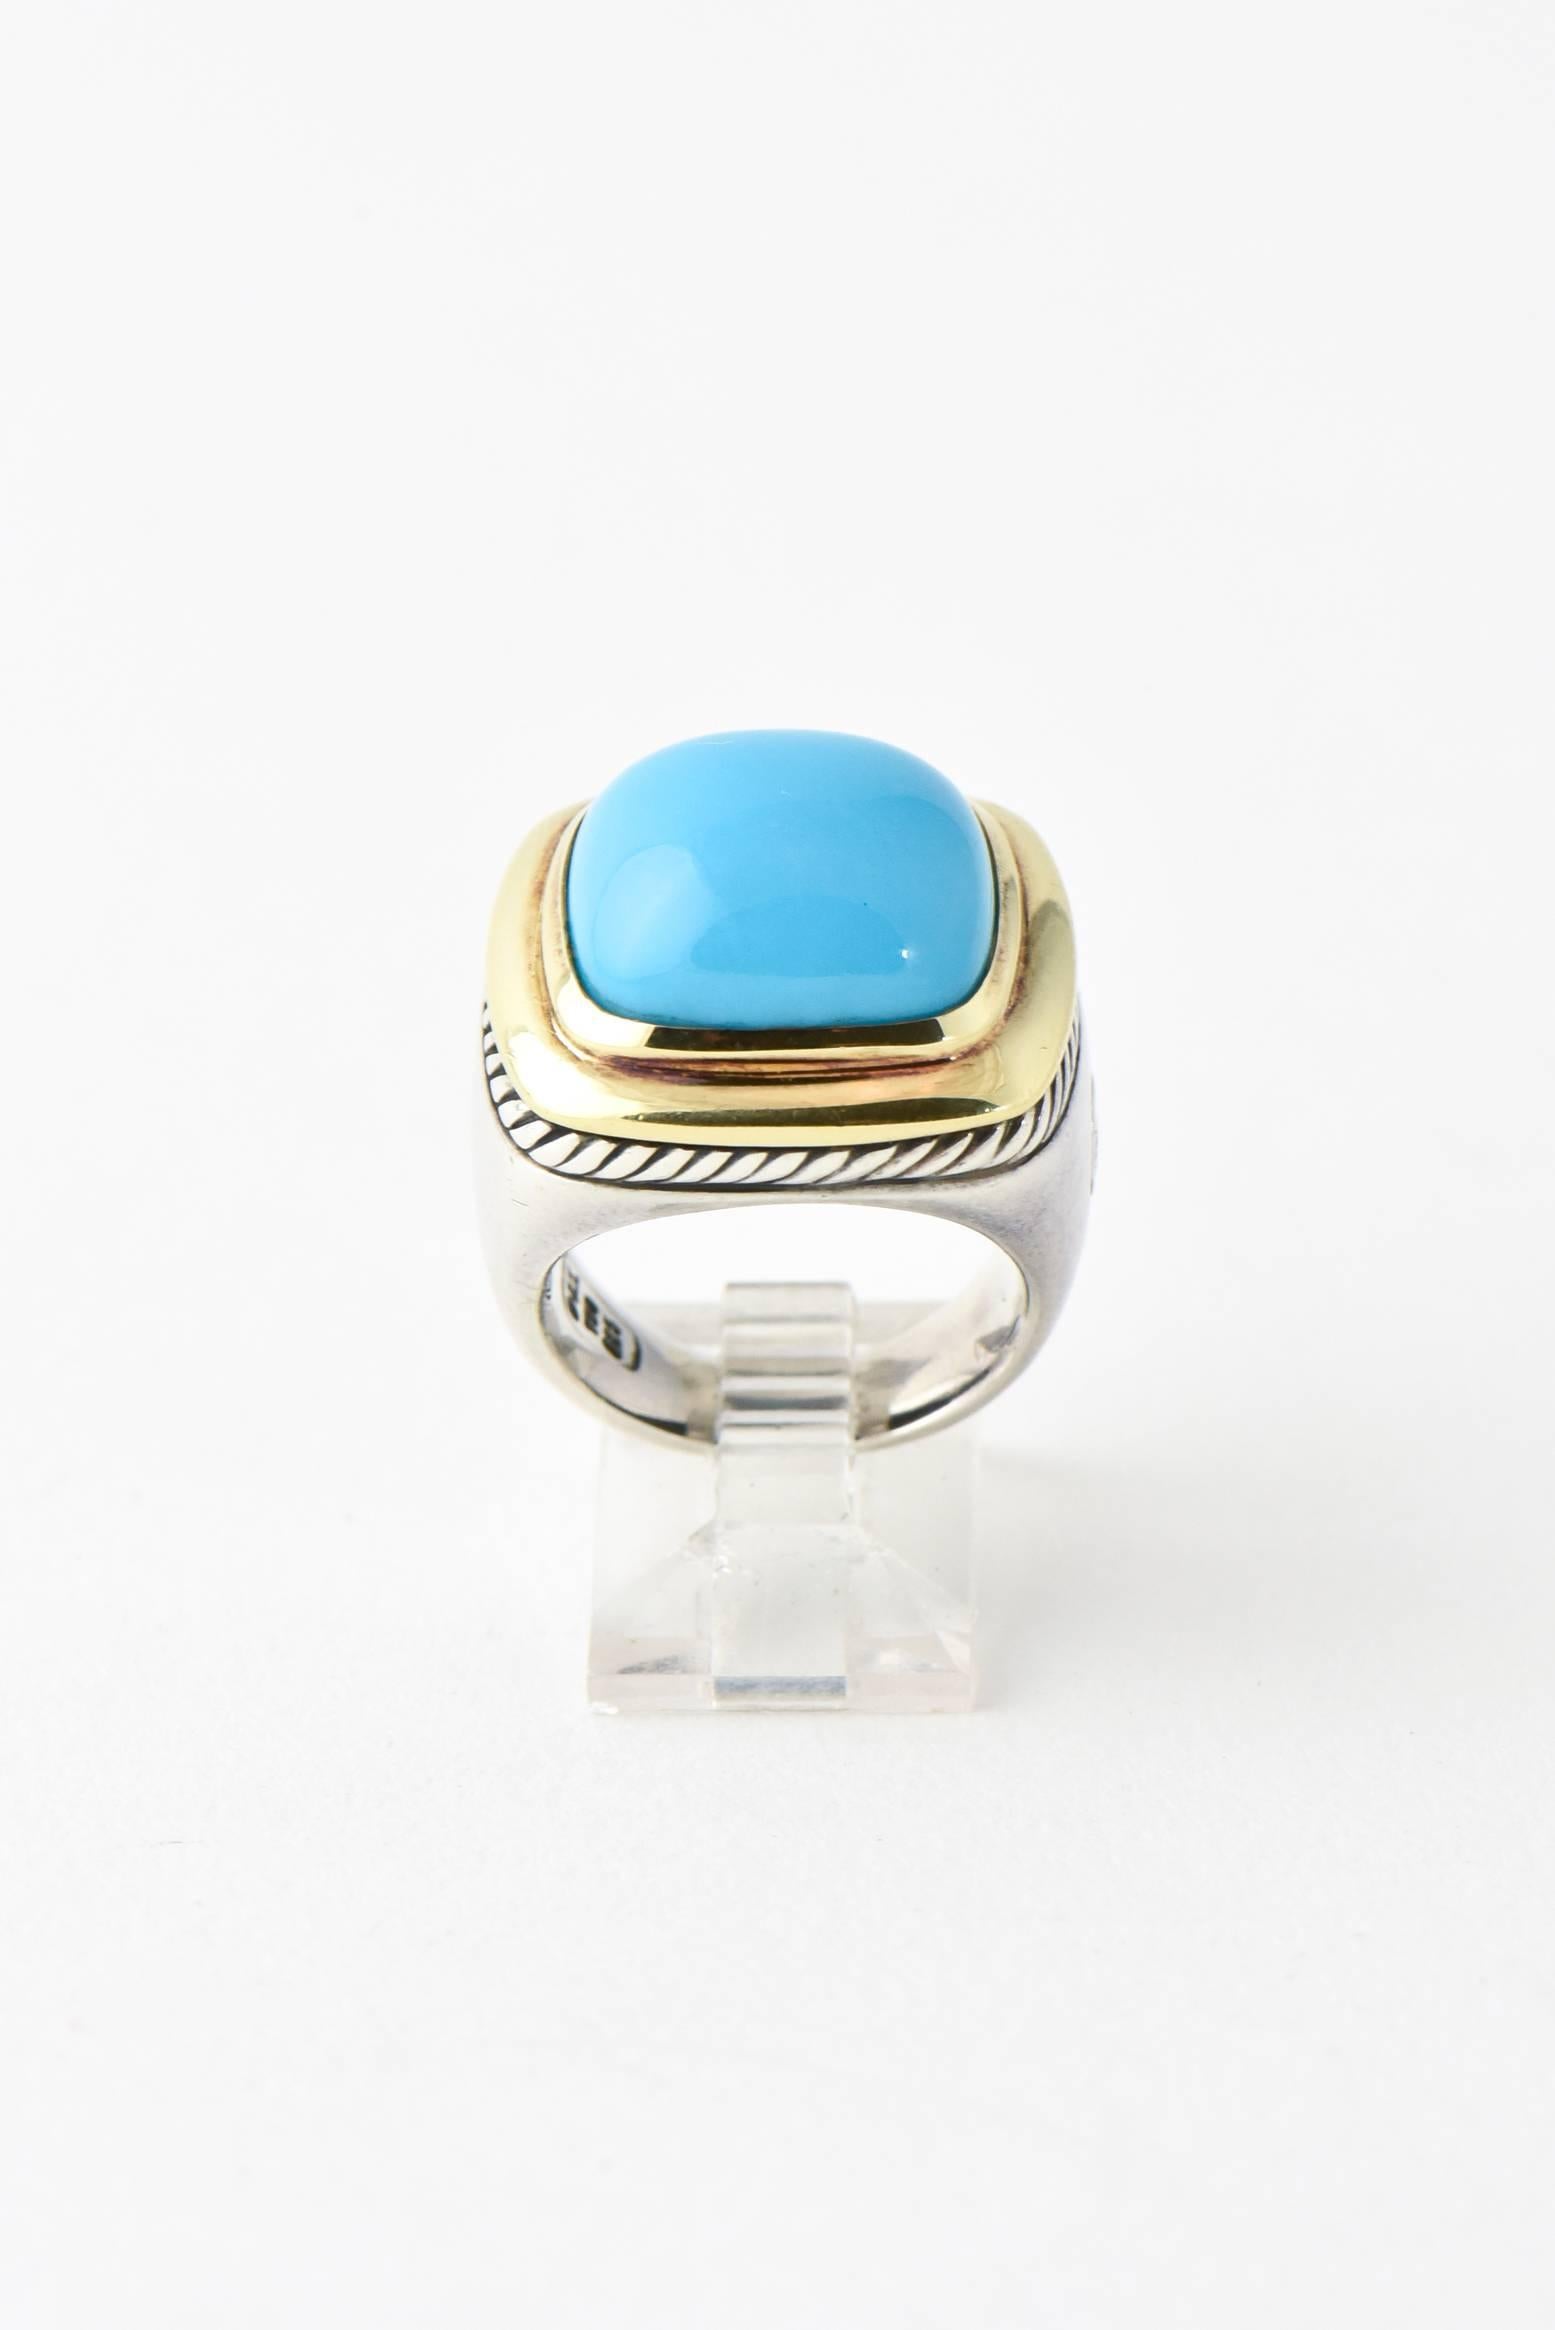 yurman turquoise ring